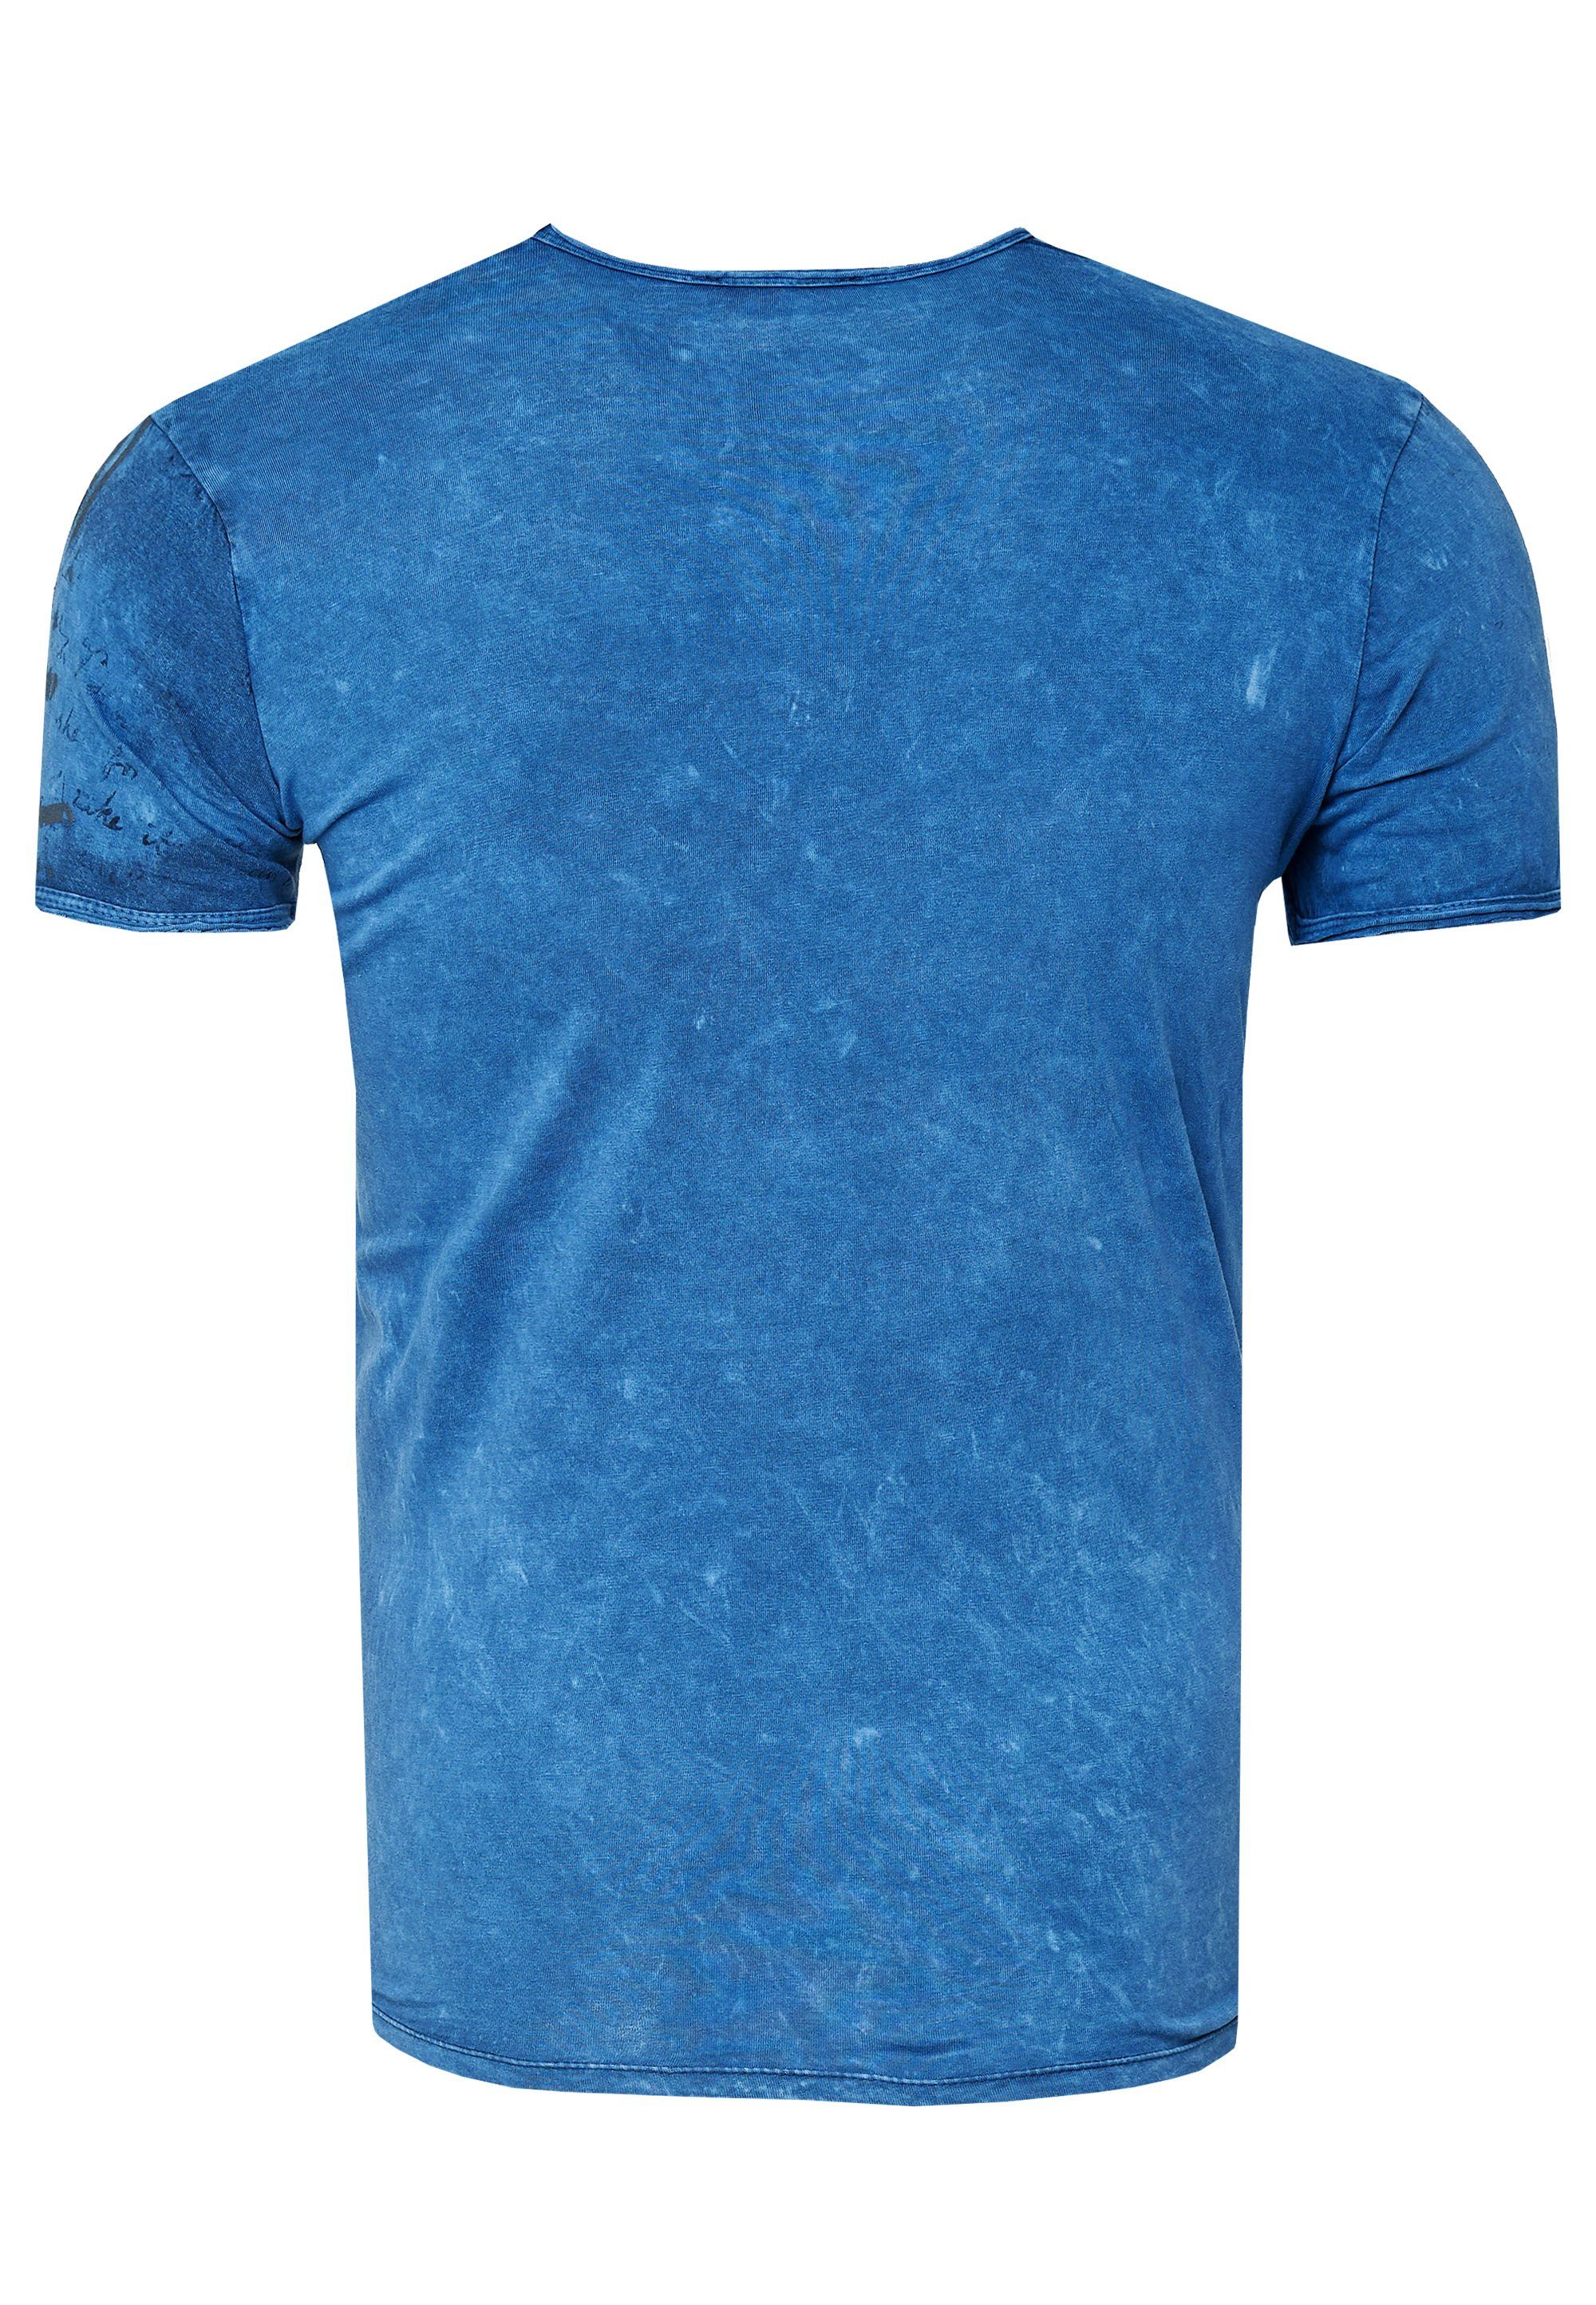 Neal blau mit Print eindrucksvollem T-Shirt Rusty